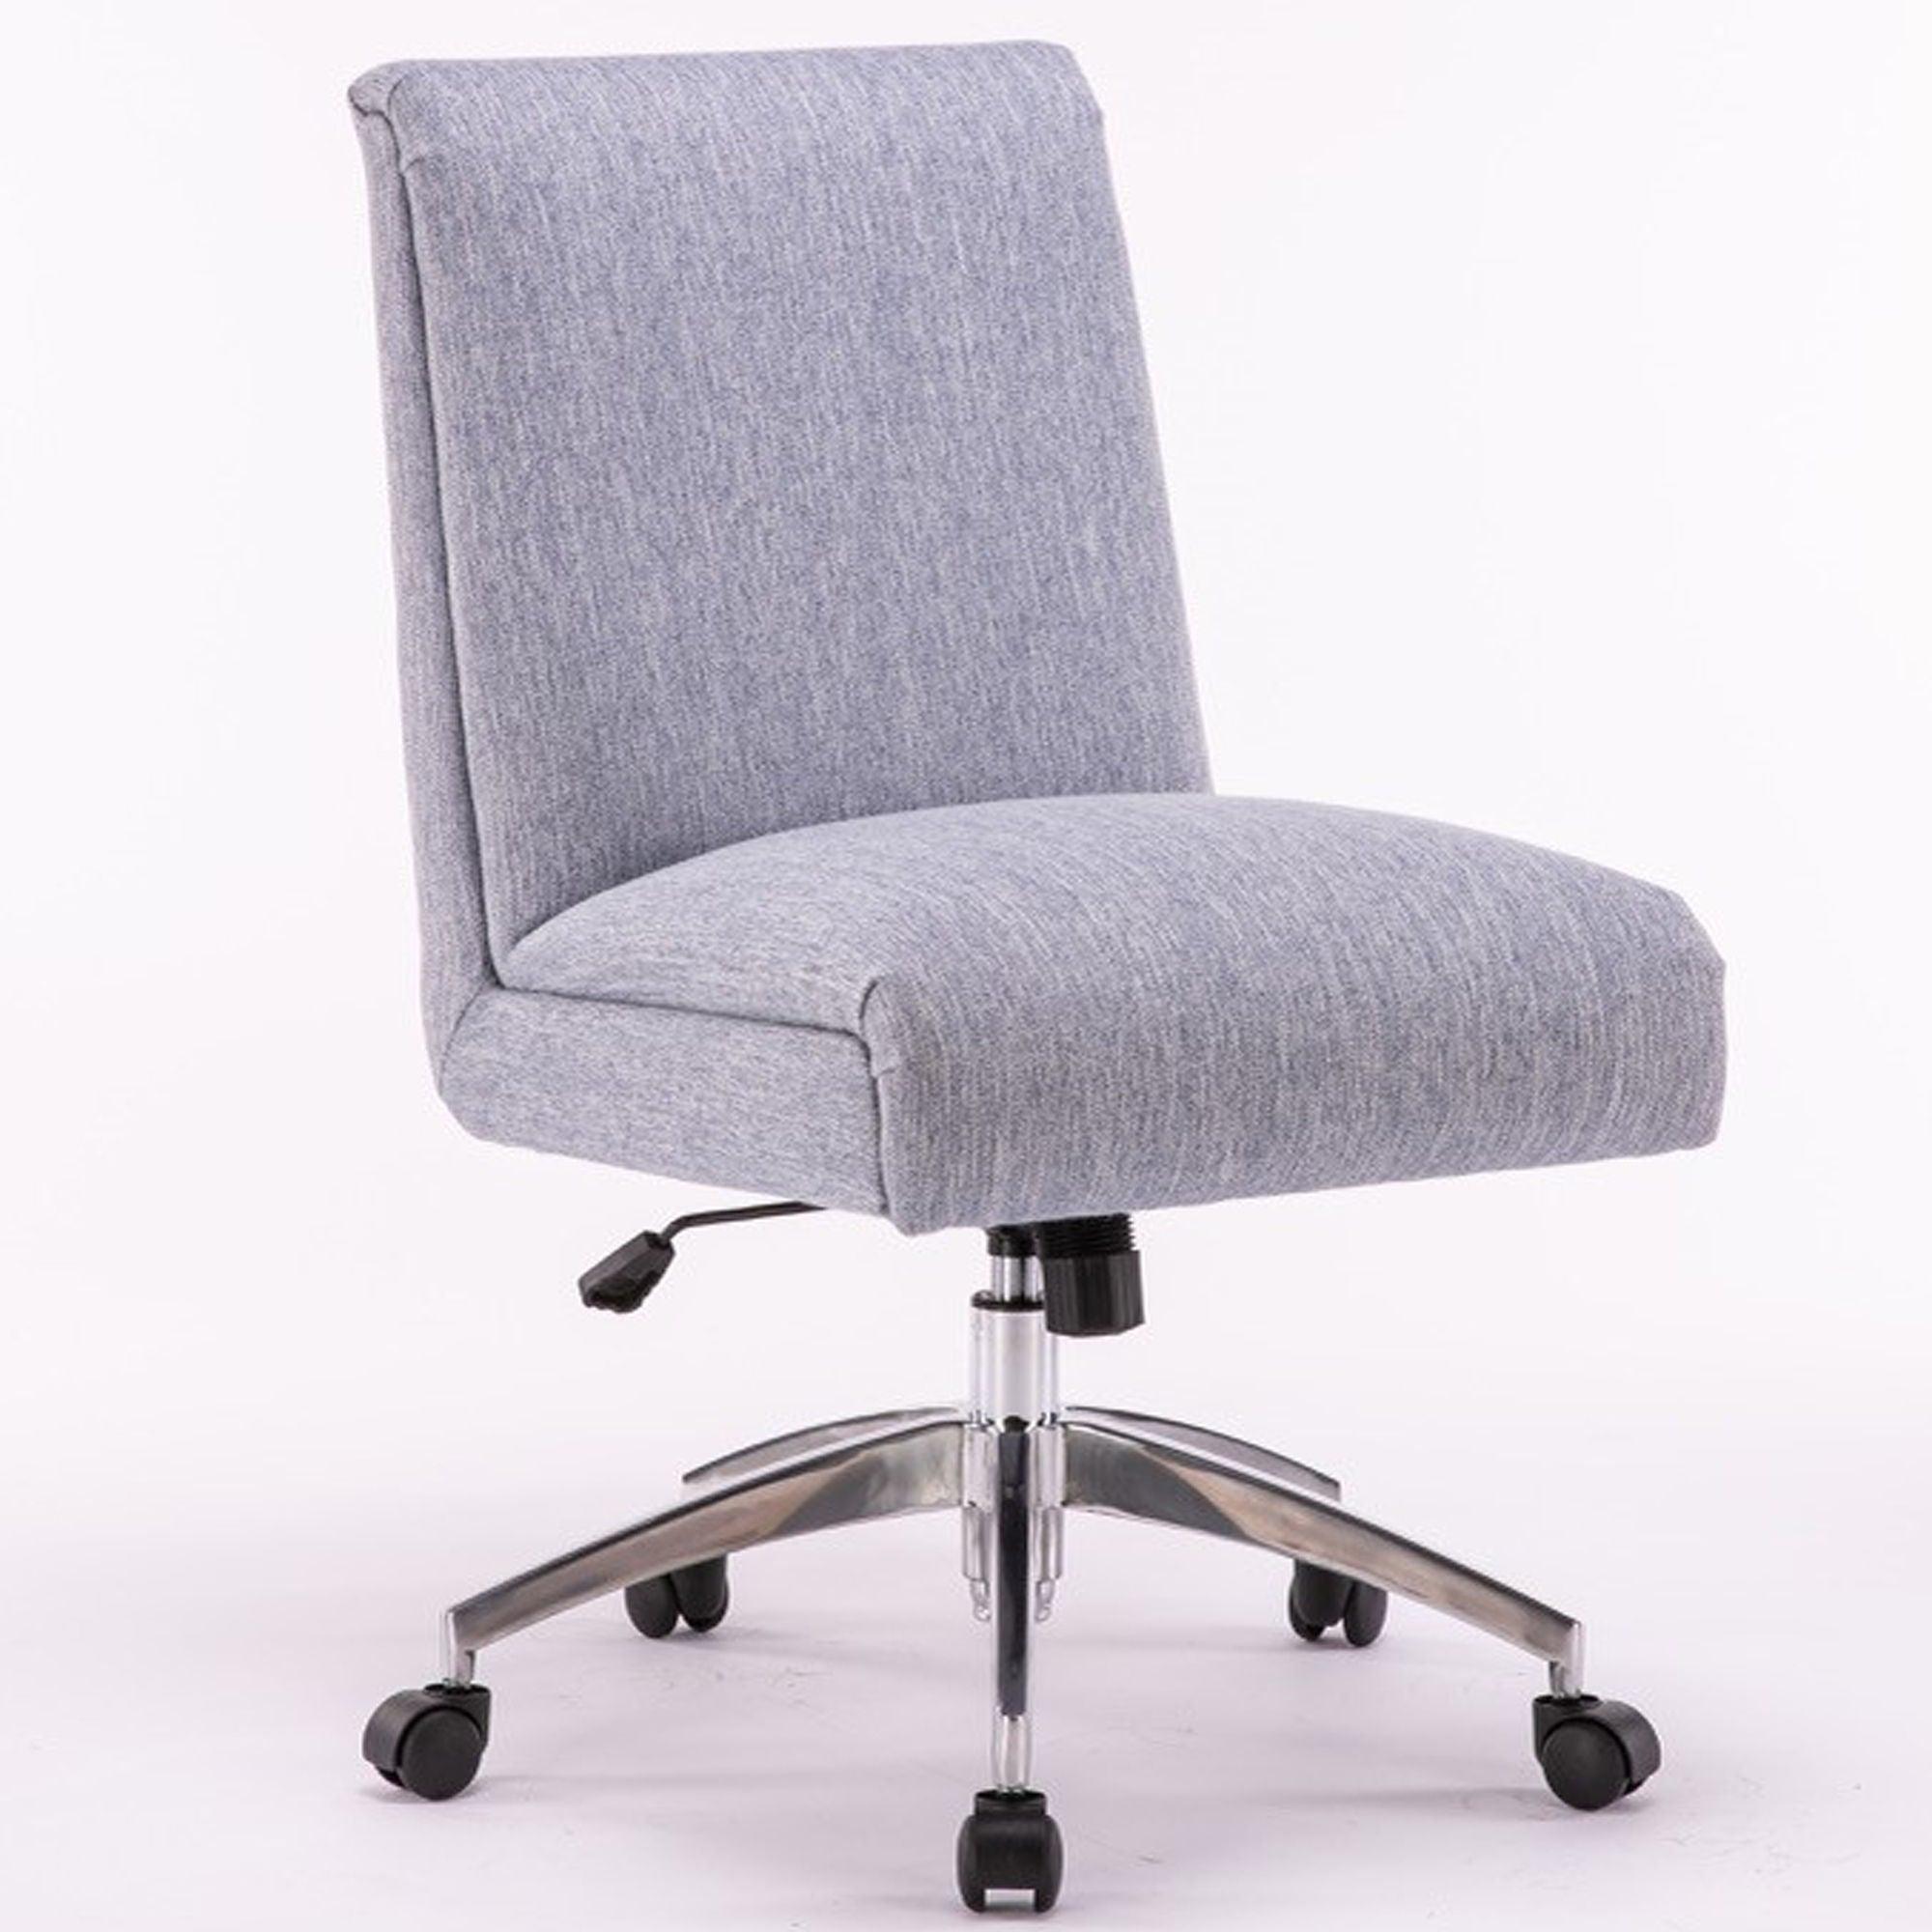 Parker Living - Dc506 - Desk Chair - 5th Avenue Furniture